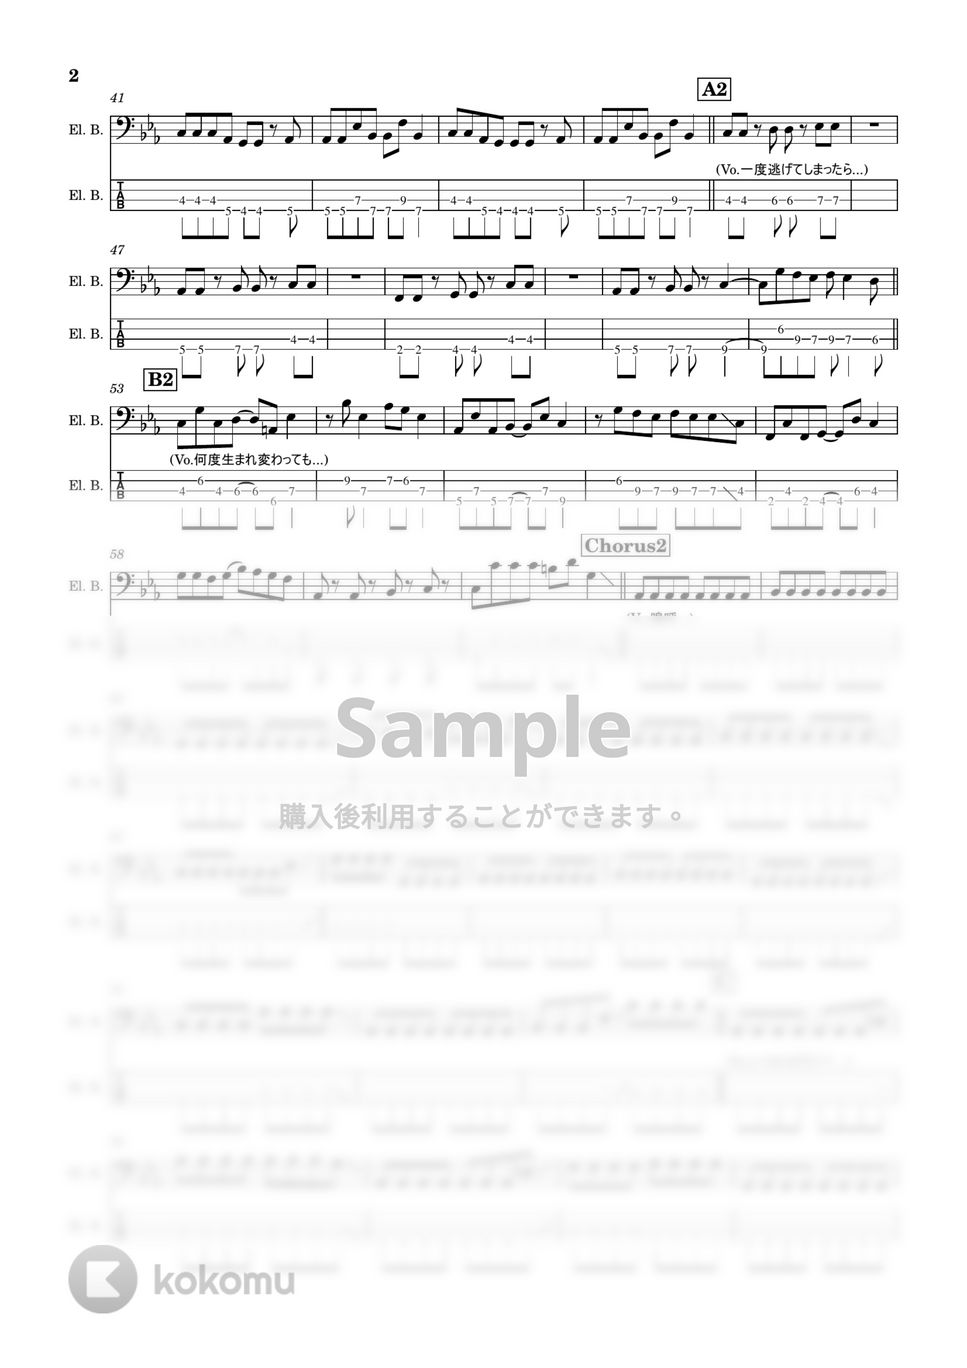 グッドモーニングアメリカ - 拝啓、ツラツストラ(4弦半音下げ) (Bass/ベース/グッドモーニングアメリカ/たなしん/ドラゴンボール) by TARUO's_Bass_Score